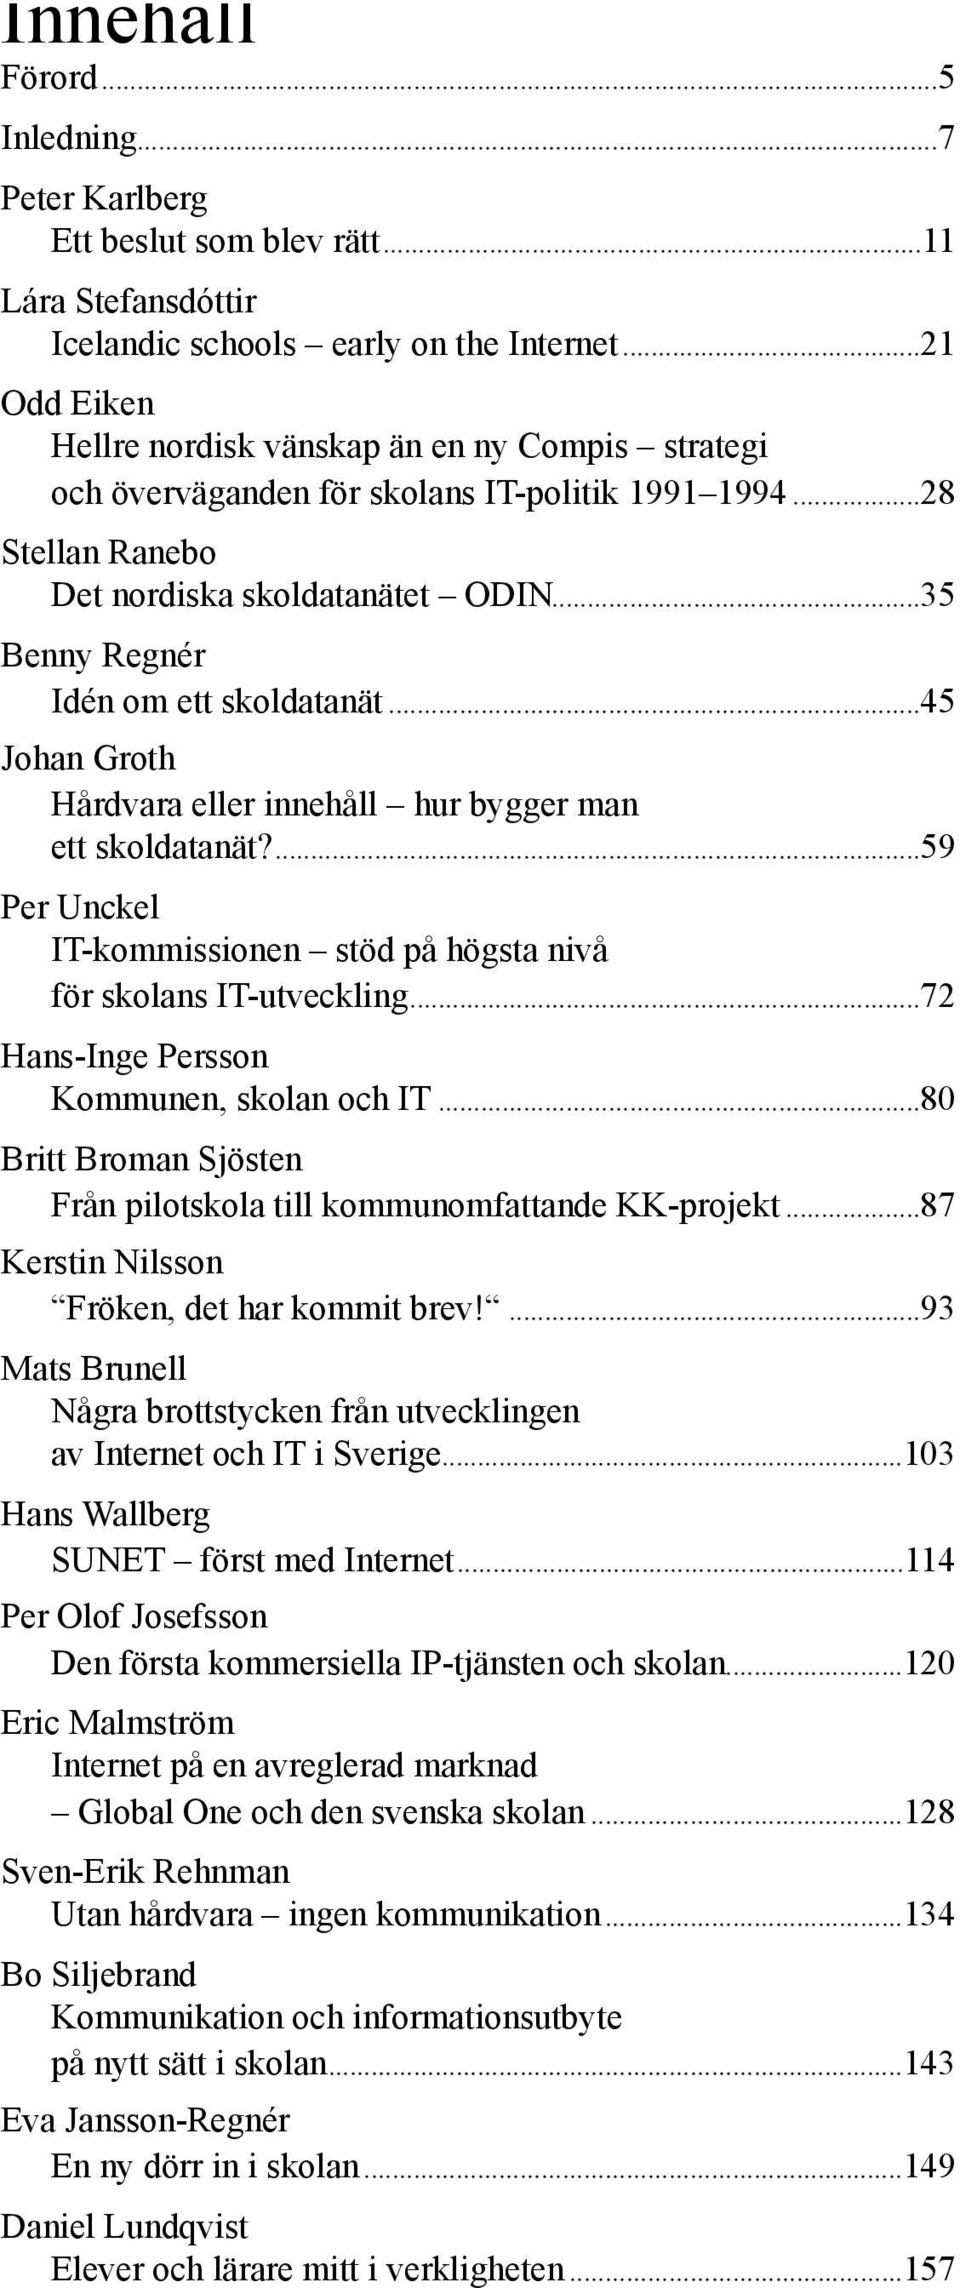 ..35 Benny Regnér Idén om ett skoldatanät...45 Johan Groth Hårdvara eller innehåll hur bygger man ett skoldatanät?...59 Per Unckel IT-kommissionen stöd på högsta nivå för skolans IT-utveckling.